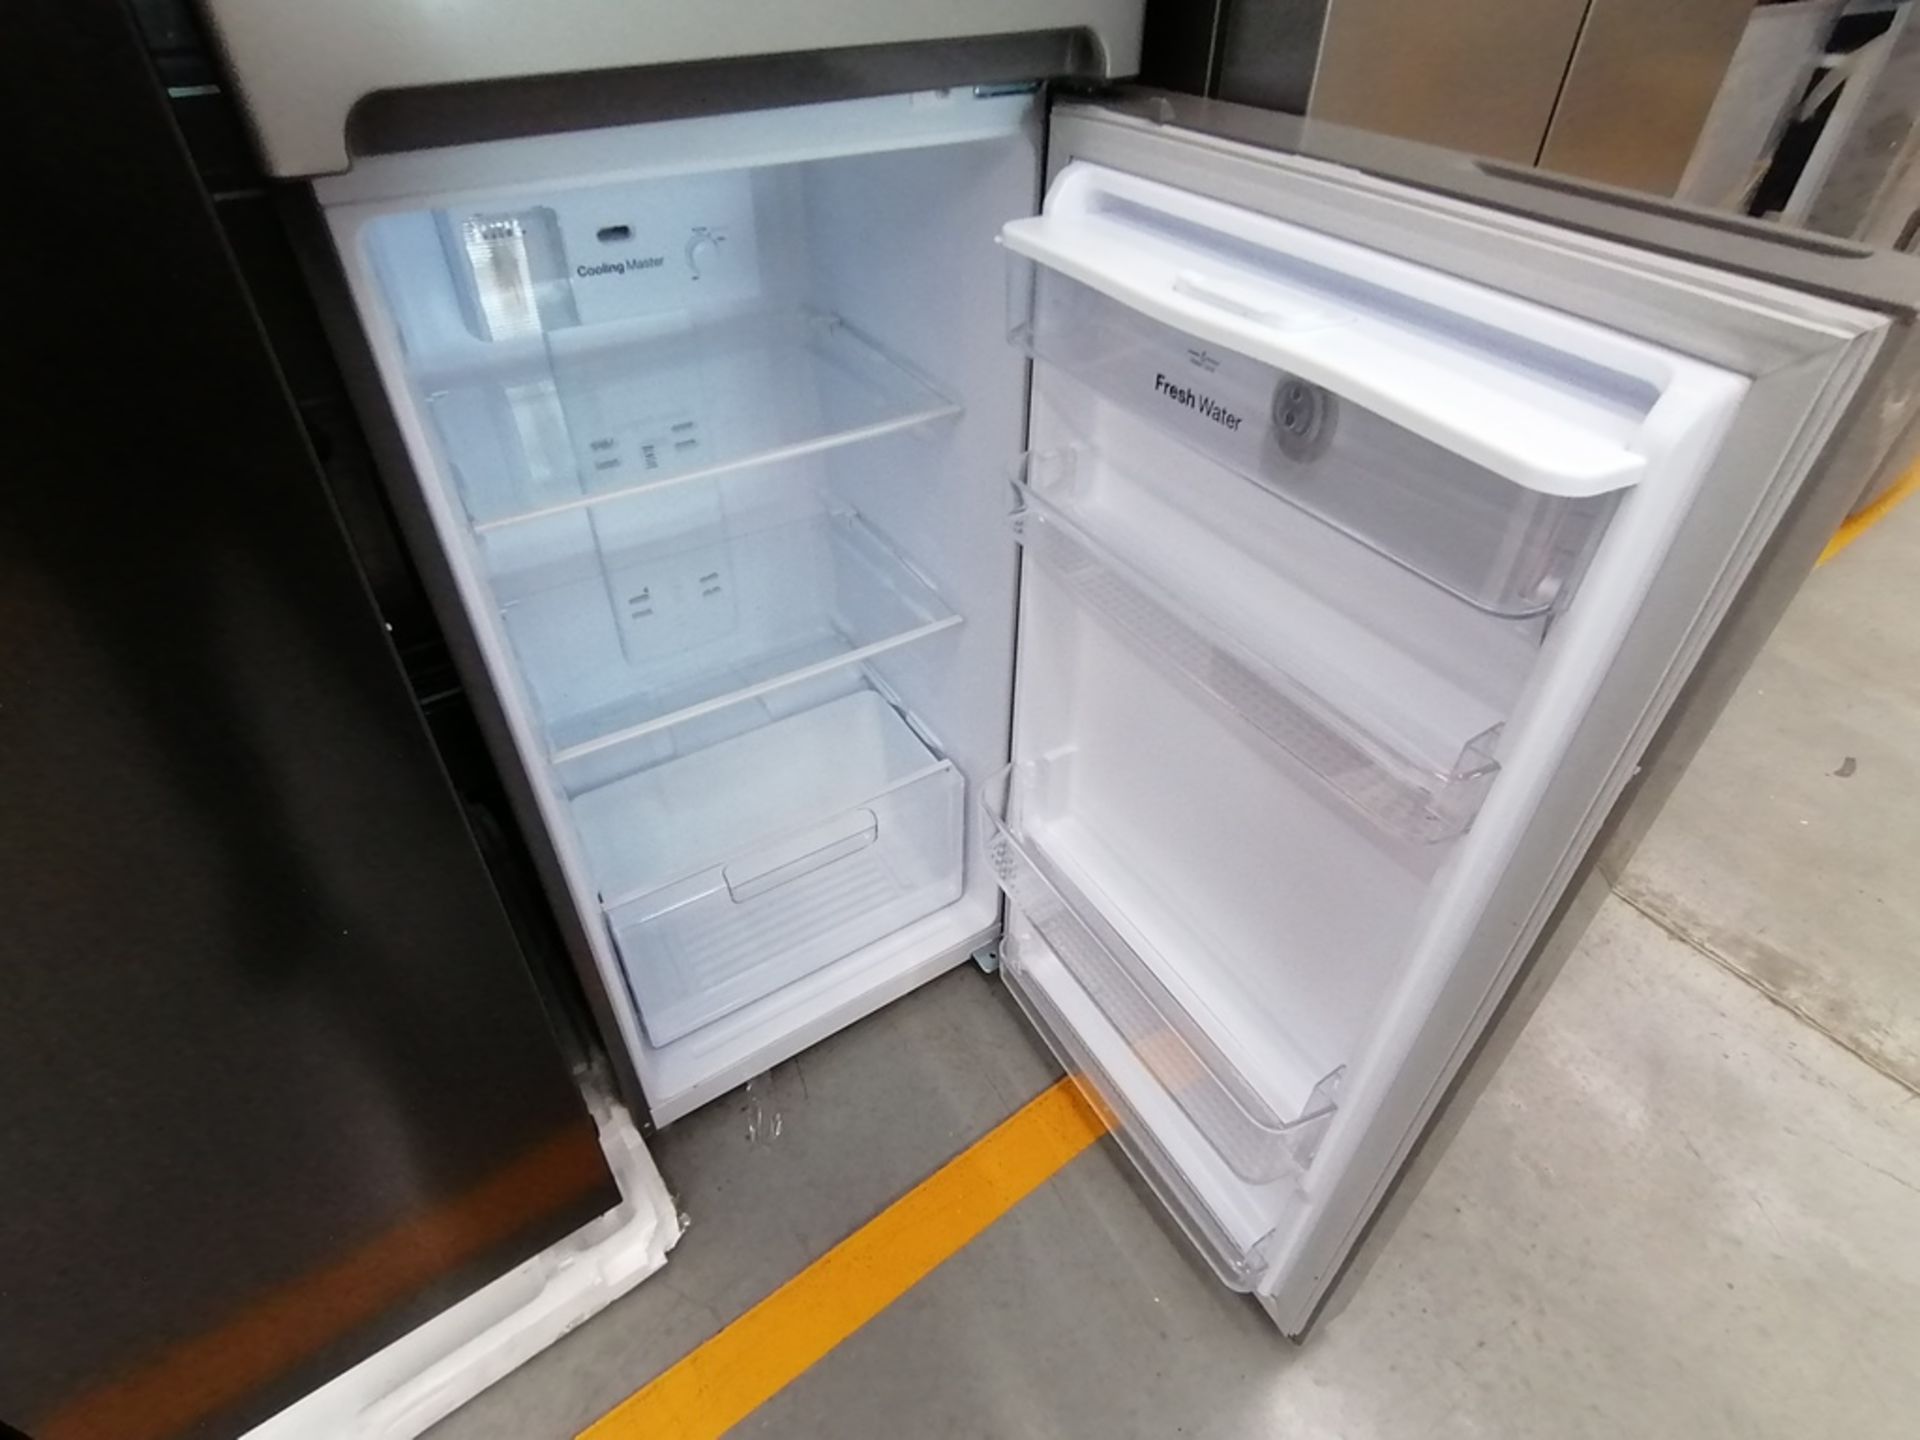 Lote de 2 refrigeradores incluye: 1 Refrigerador, Marca Samsung, Modelo RS28T5B00B1, Serie 0B2V4BAR - Image 6 of 13